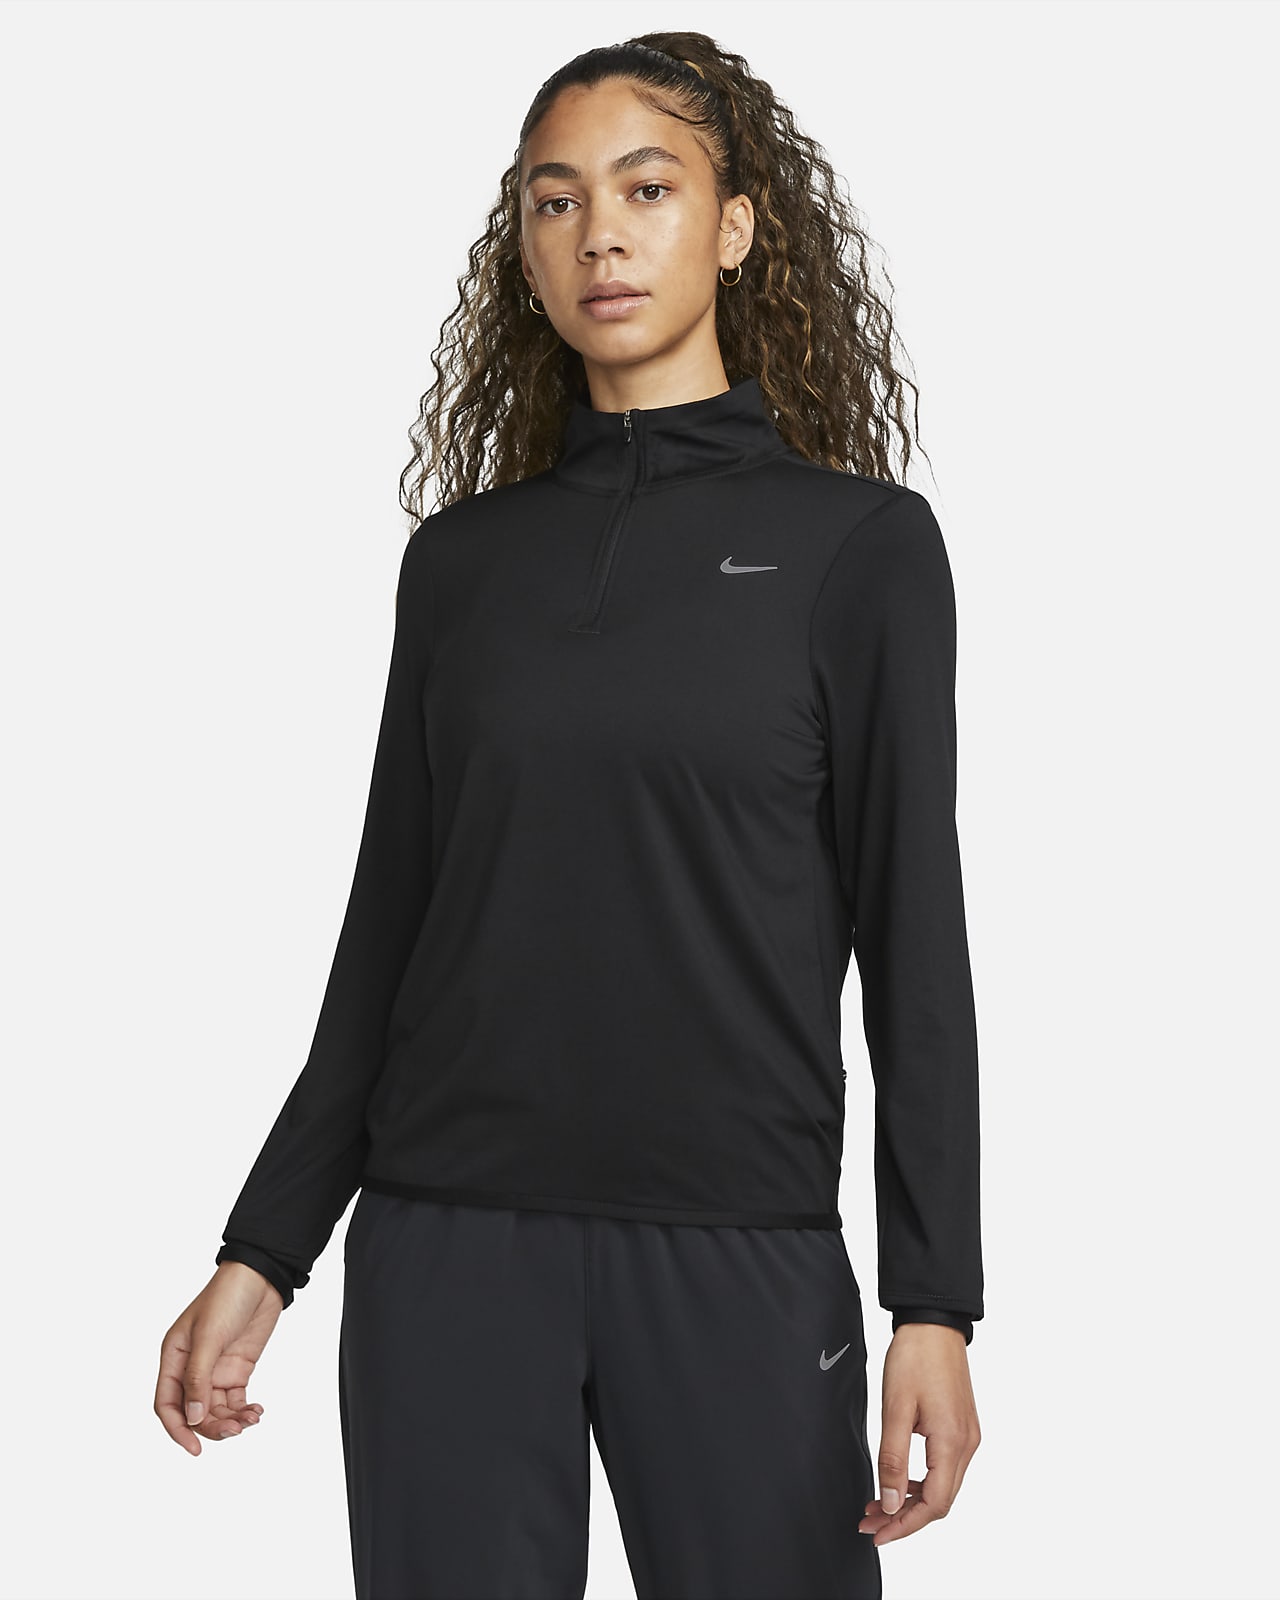 Nike Swift løpeoverdel med UV-beskyttelse og glidelås i halsen til dame